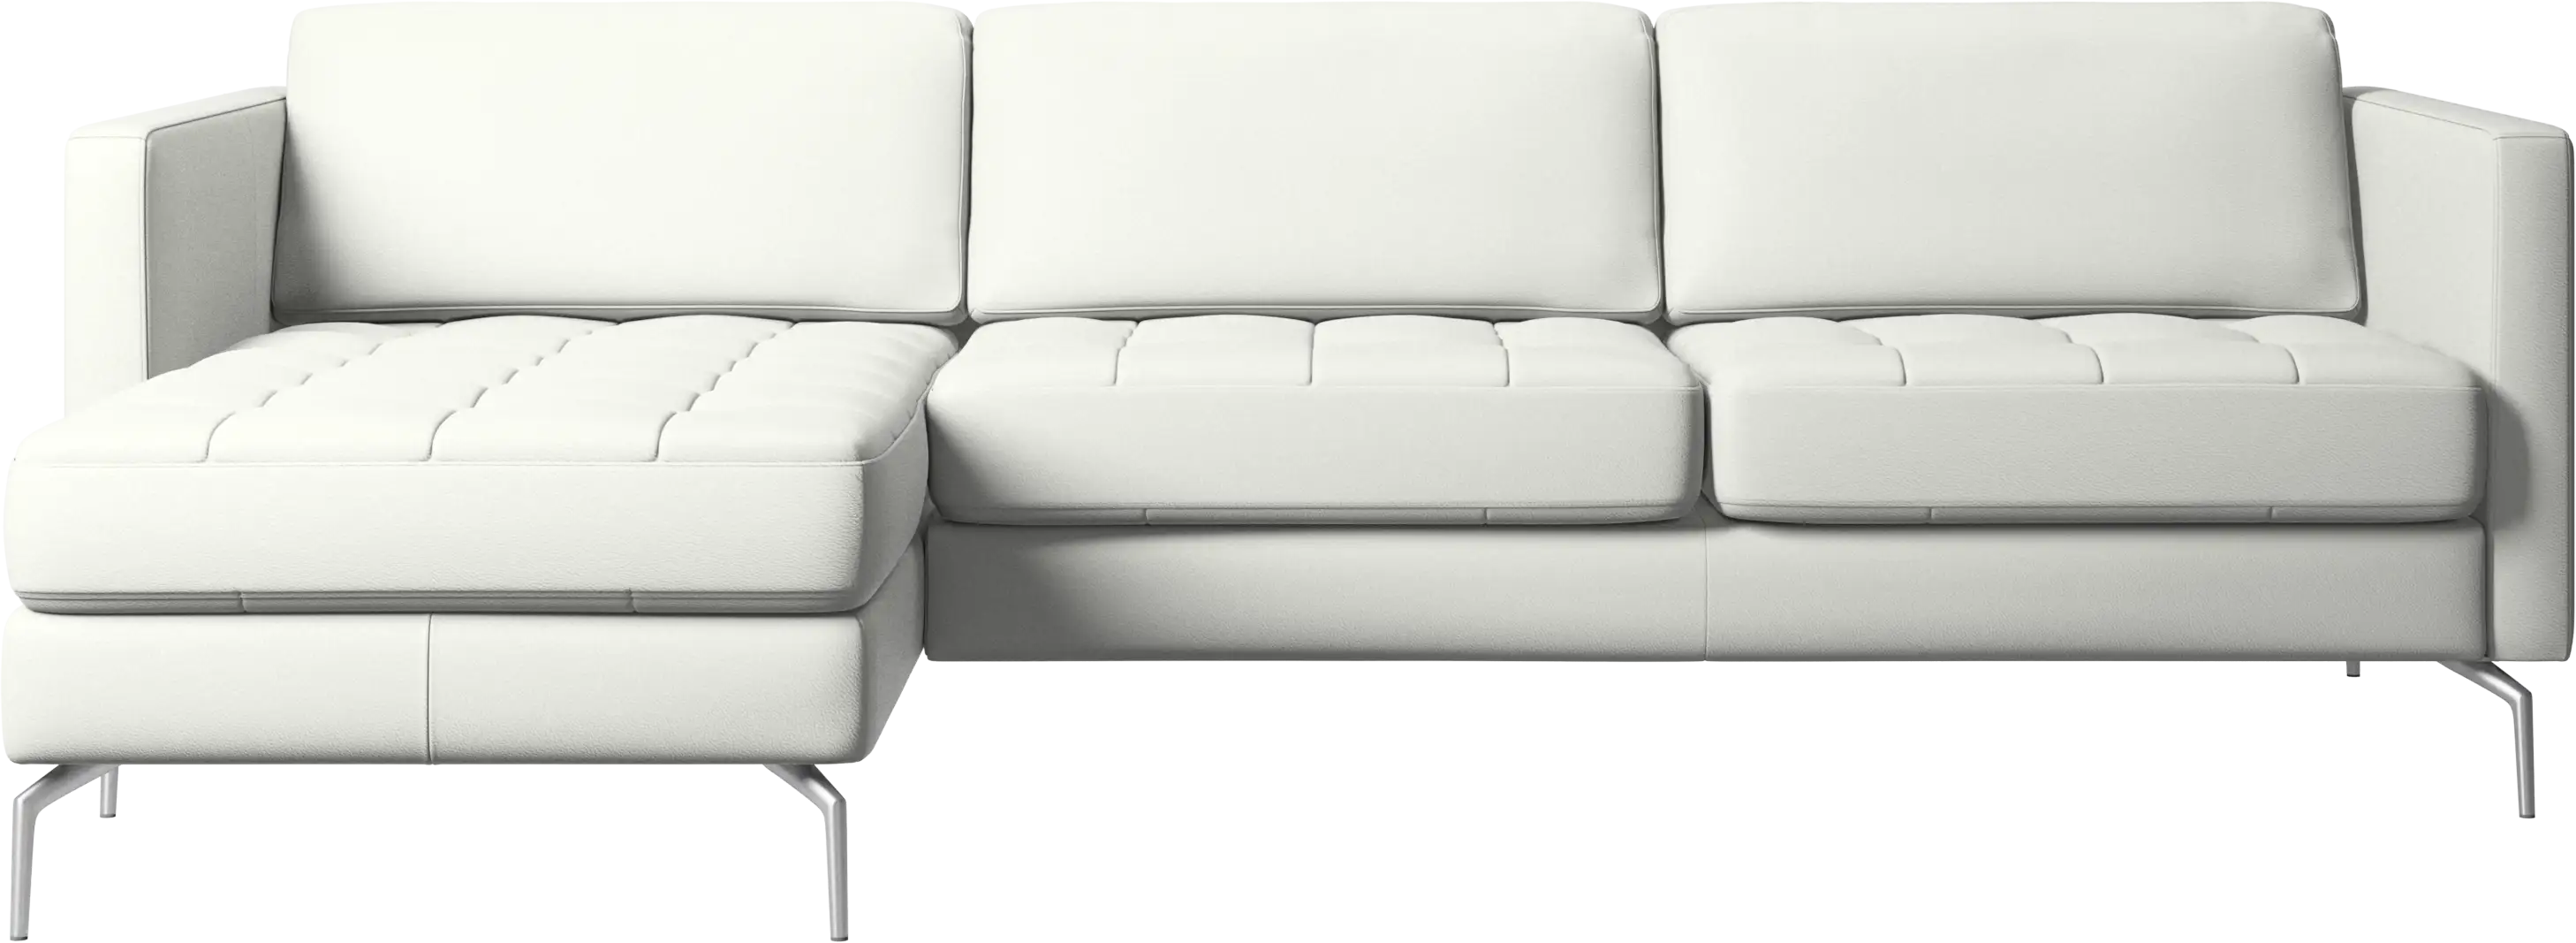 Osaka sofa with resting unit, tufted seat